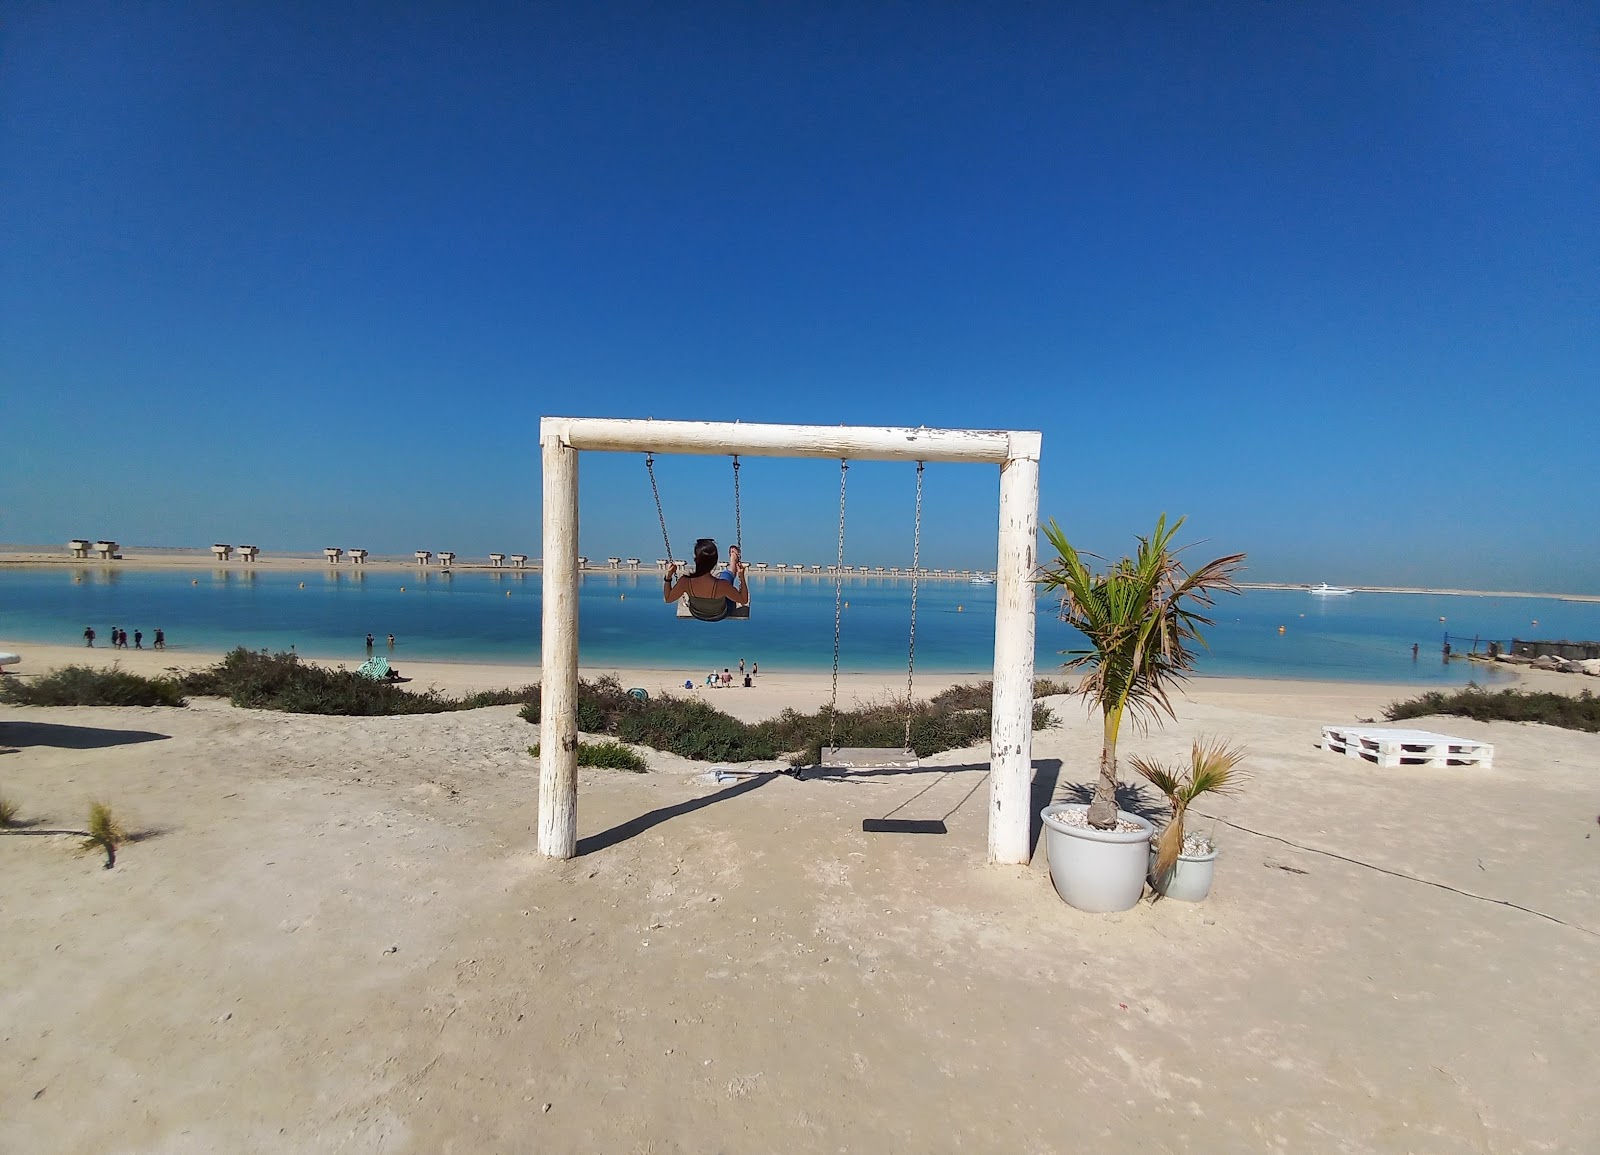 Fotografie cu Jebel Ali Beach - loc de vacanță prietenos pentru animale de companie